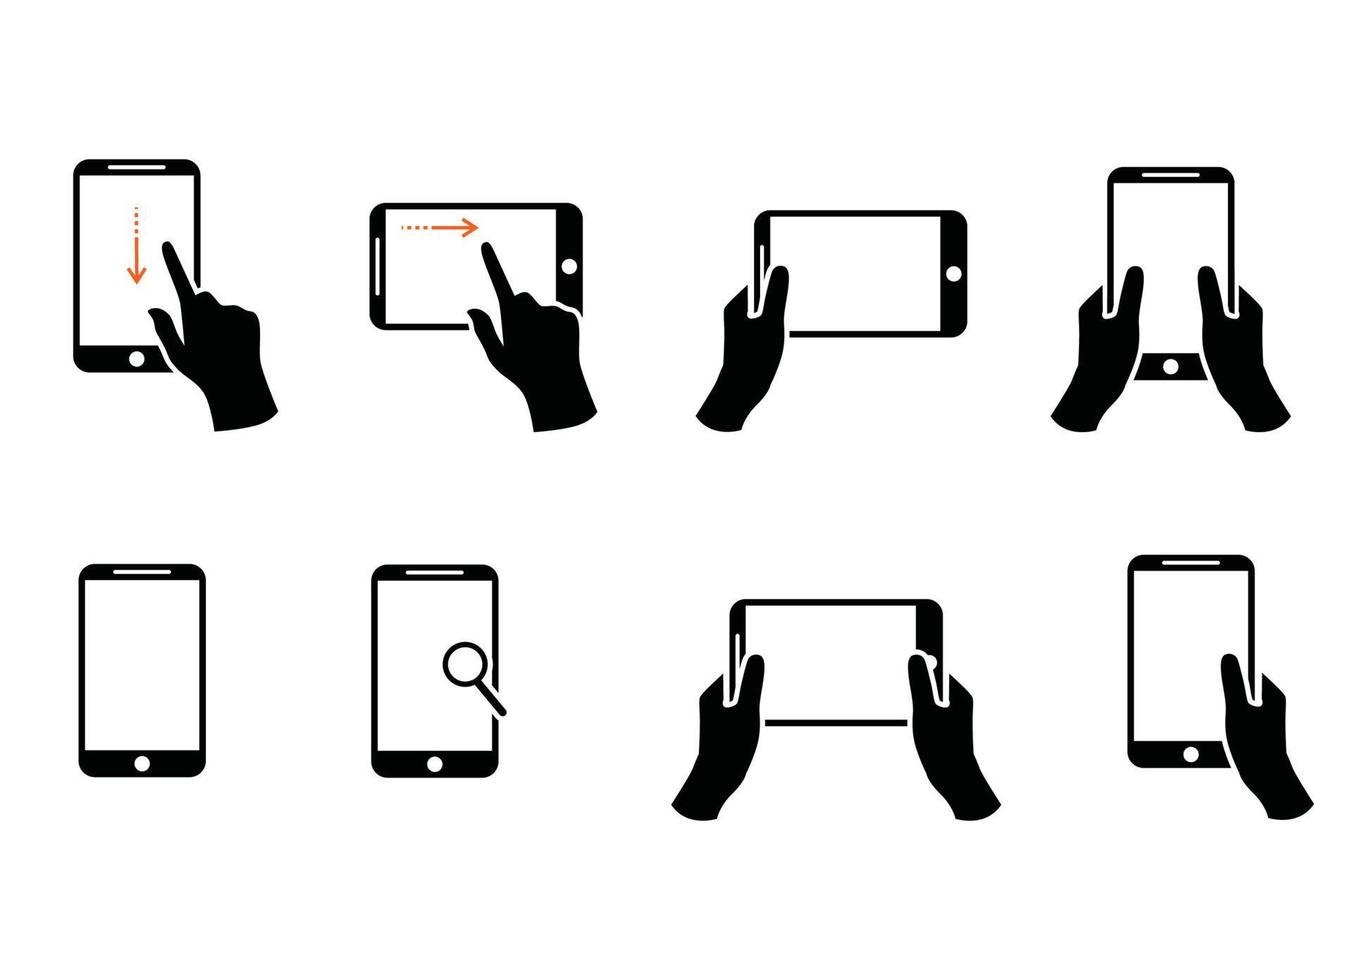 verzameling van handen Holding modern smartphone getrokken met zwart contour lijnen. bundel van schets tekeningen van palmen en telefoons geïsoleerd Aan wit achtergrond. vector illustratie in monochroom kleuren.